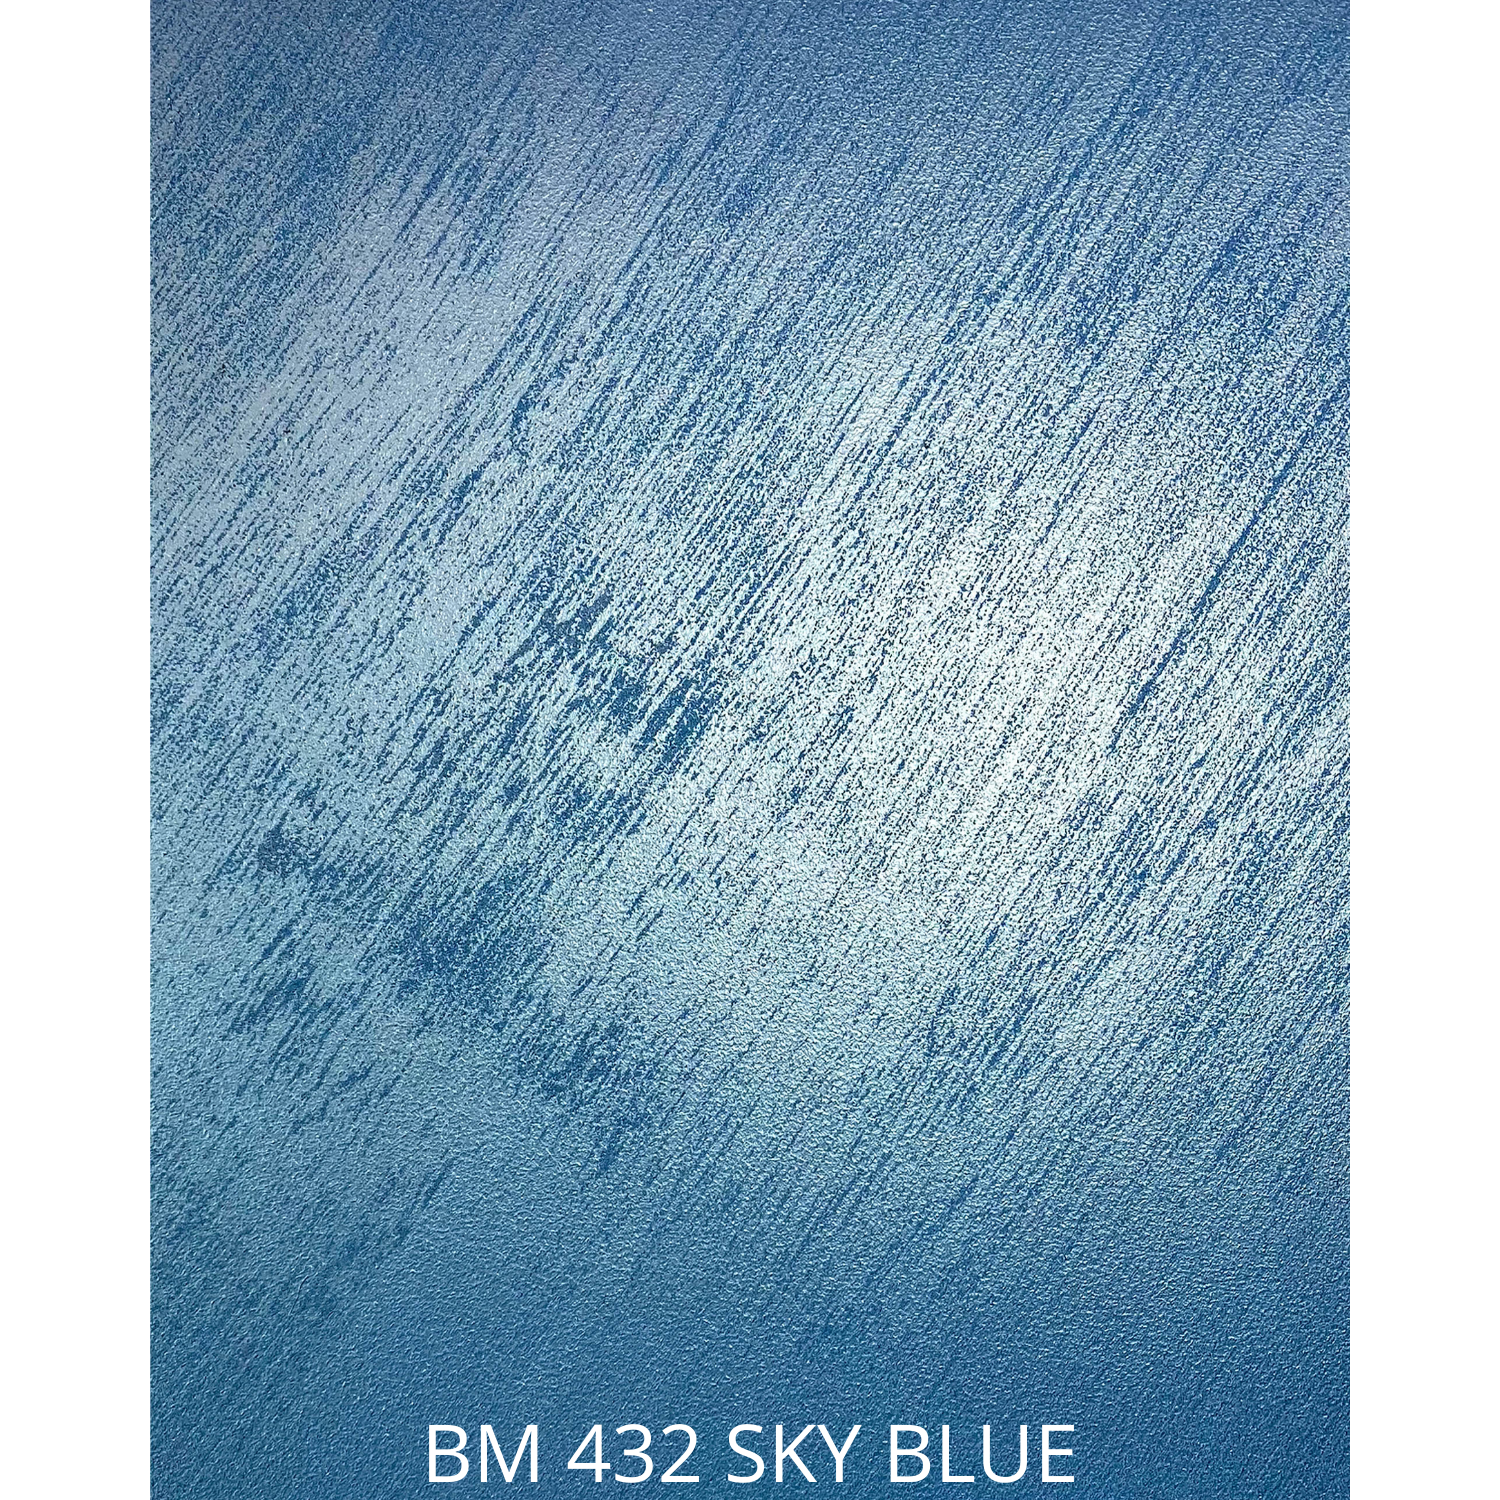 BM 432 SKY BLUE